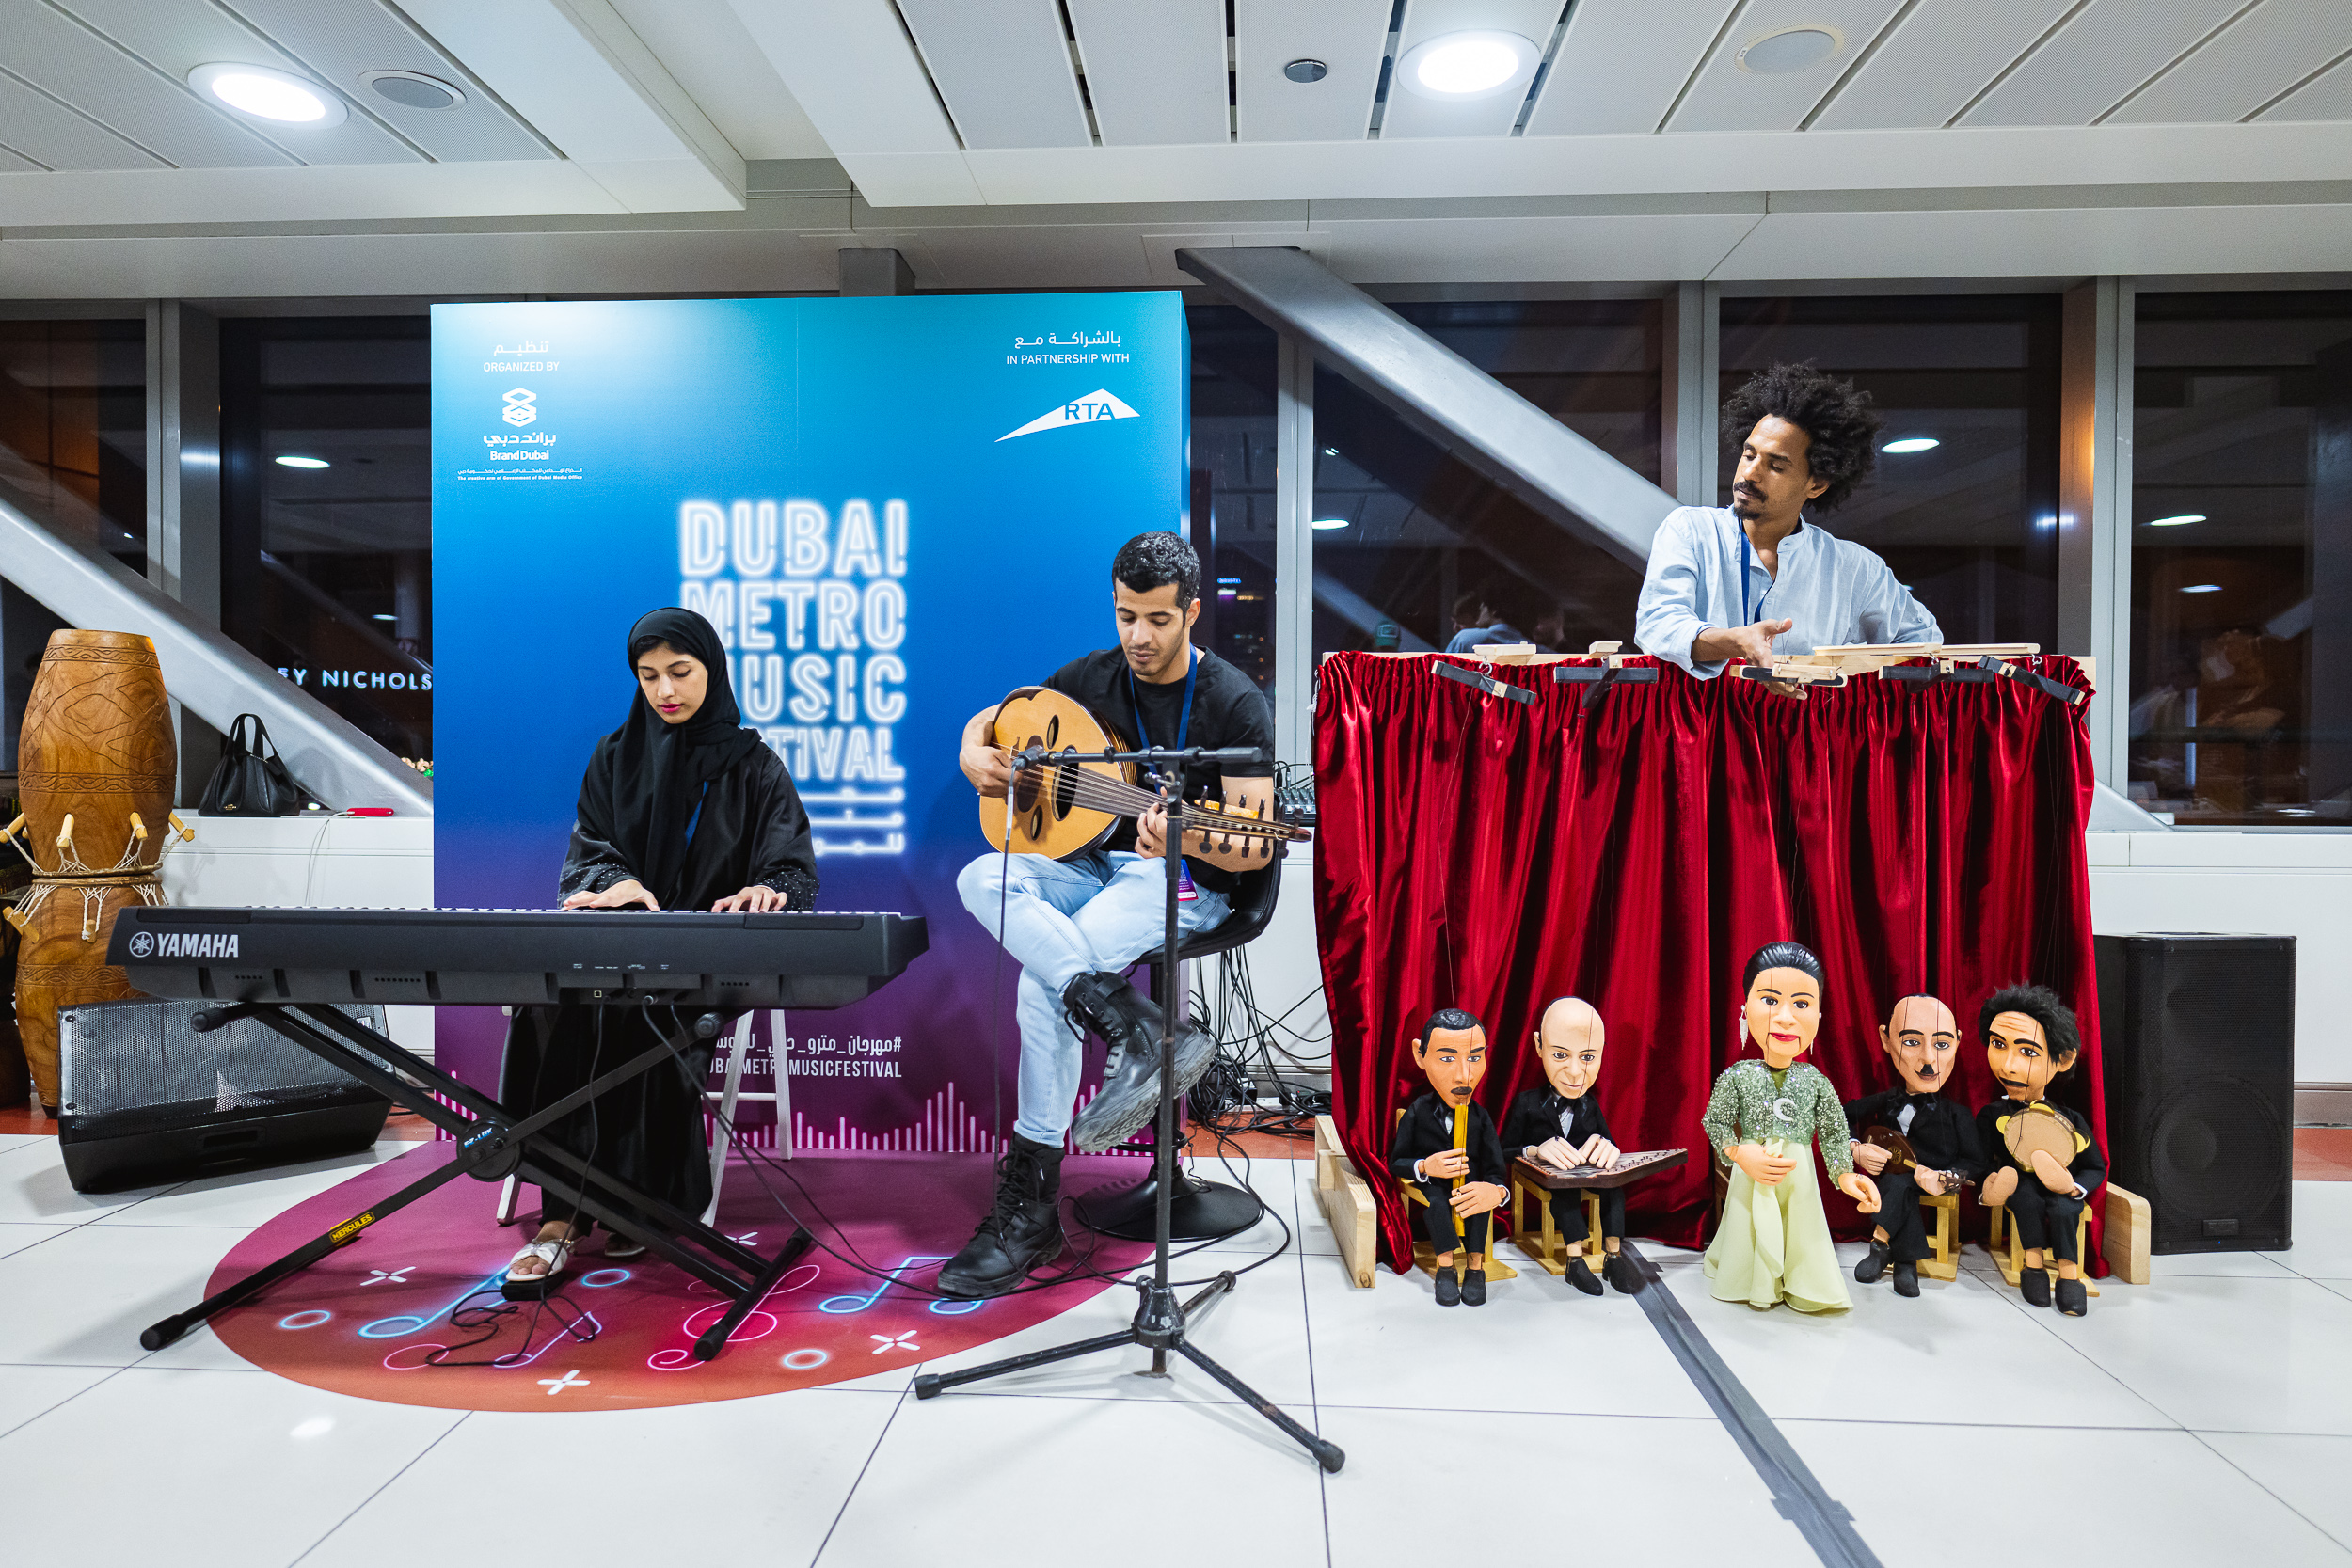 يضفي الموسيقيون العرب نكهة فريدة على مهرجان مترو دبي للموسيقى بمزيجهم المعقد من الأساليب التقليدية والمعاصرة